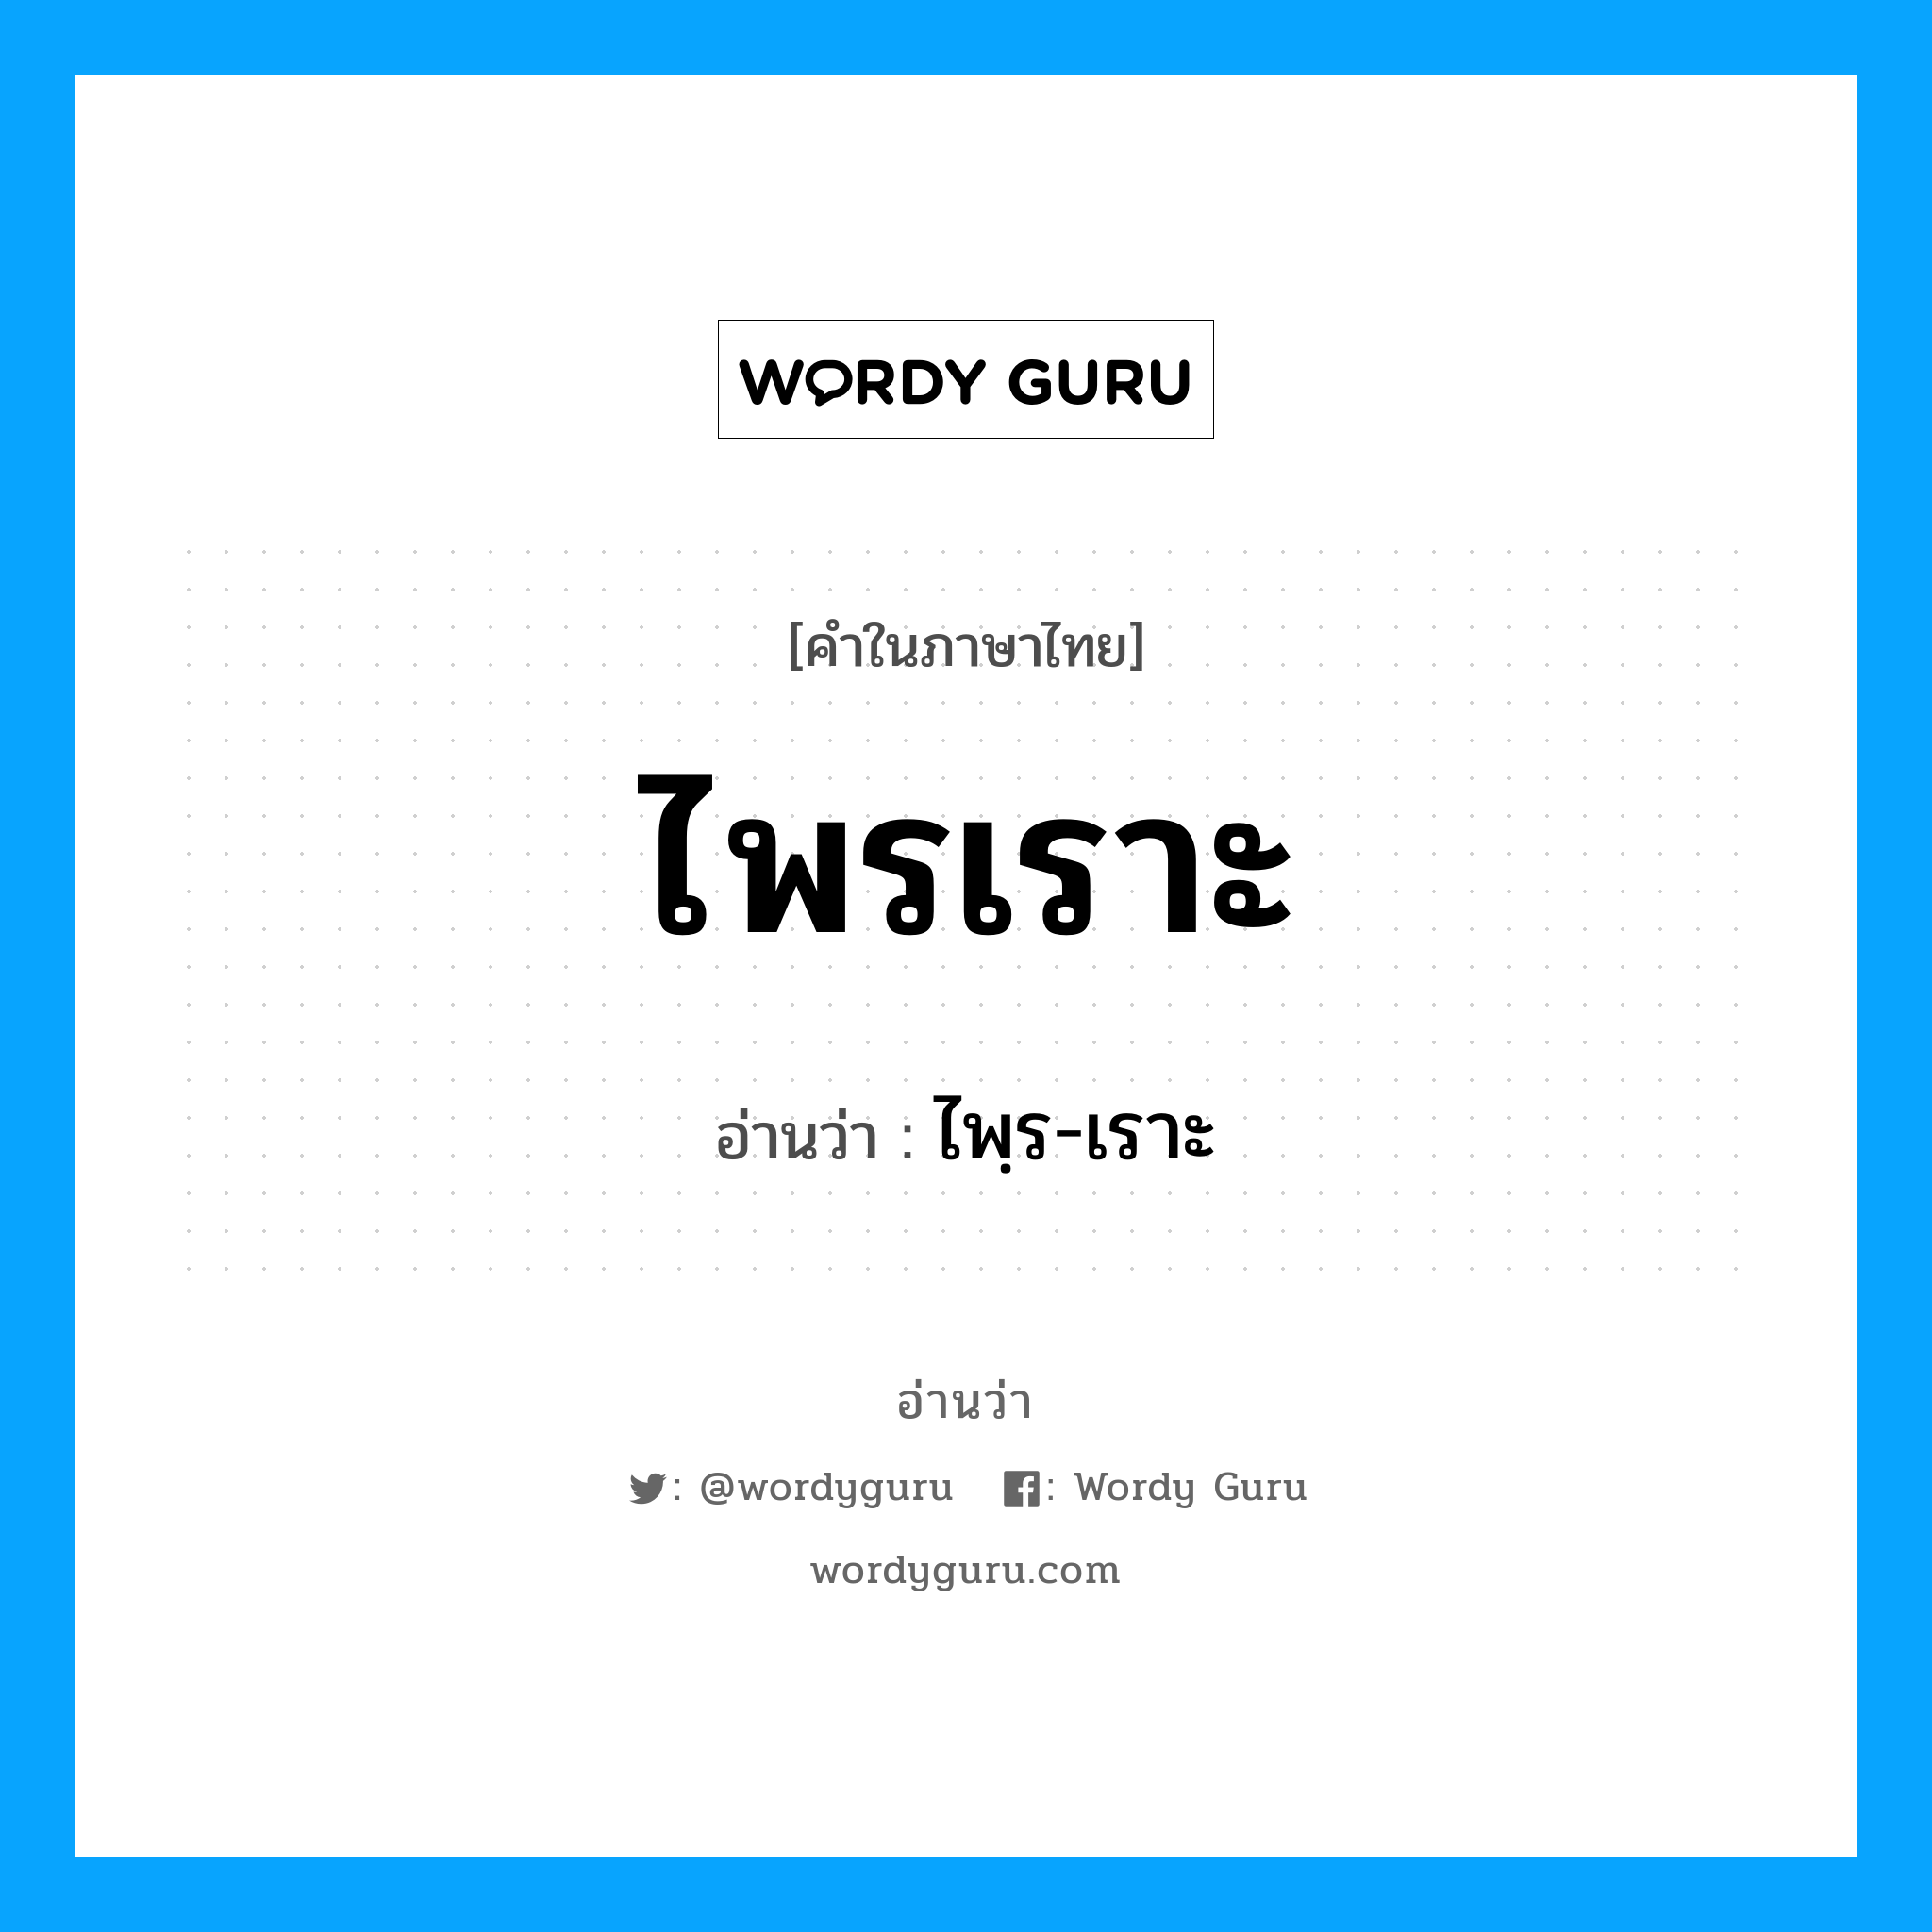 ไพฺร-เราะ เป็นคำอ่านของคำไหน?, คำในภาษาไทย ไพฺร-เราะ อ่านว่า ไพรเราะ